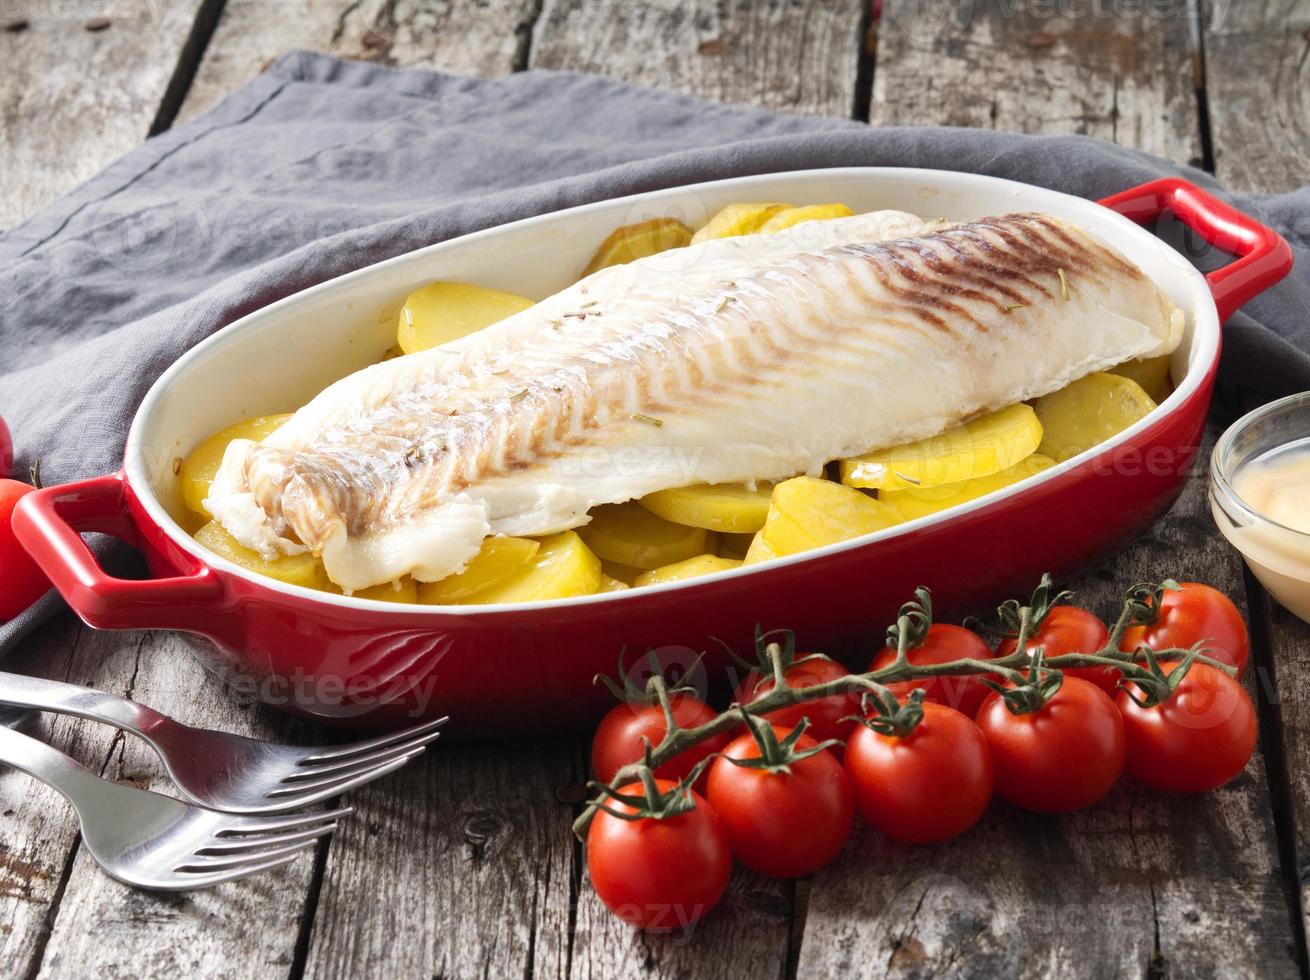 bacalao de pescado al horno con patatas, dieta saludable. fondo gris rústico de madera vieja oscura, vista lateral foto